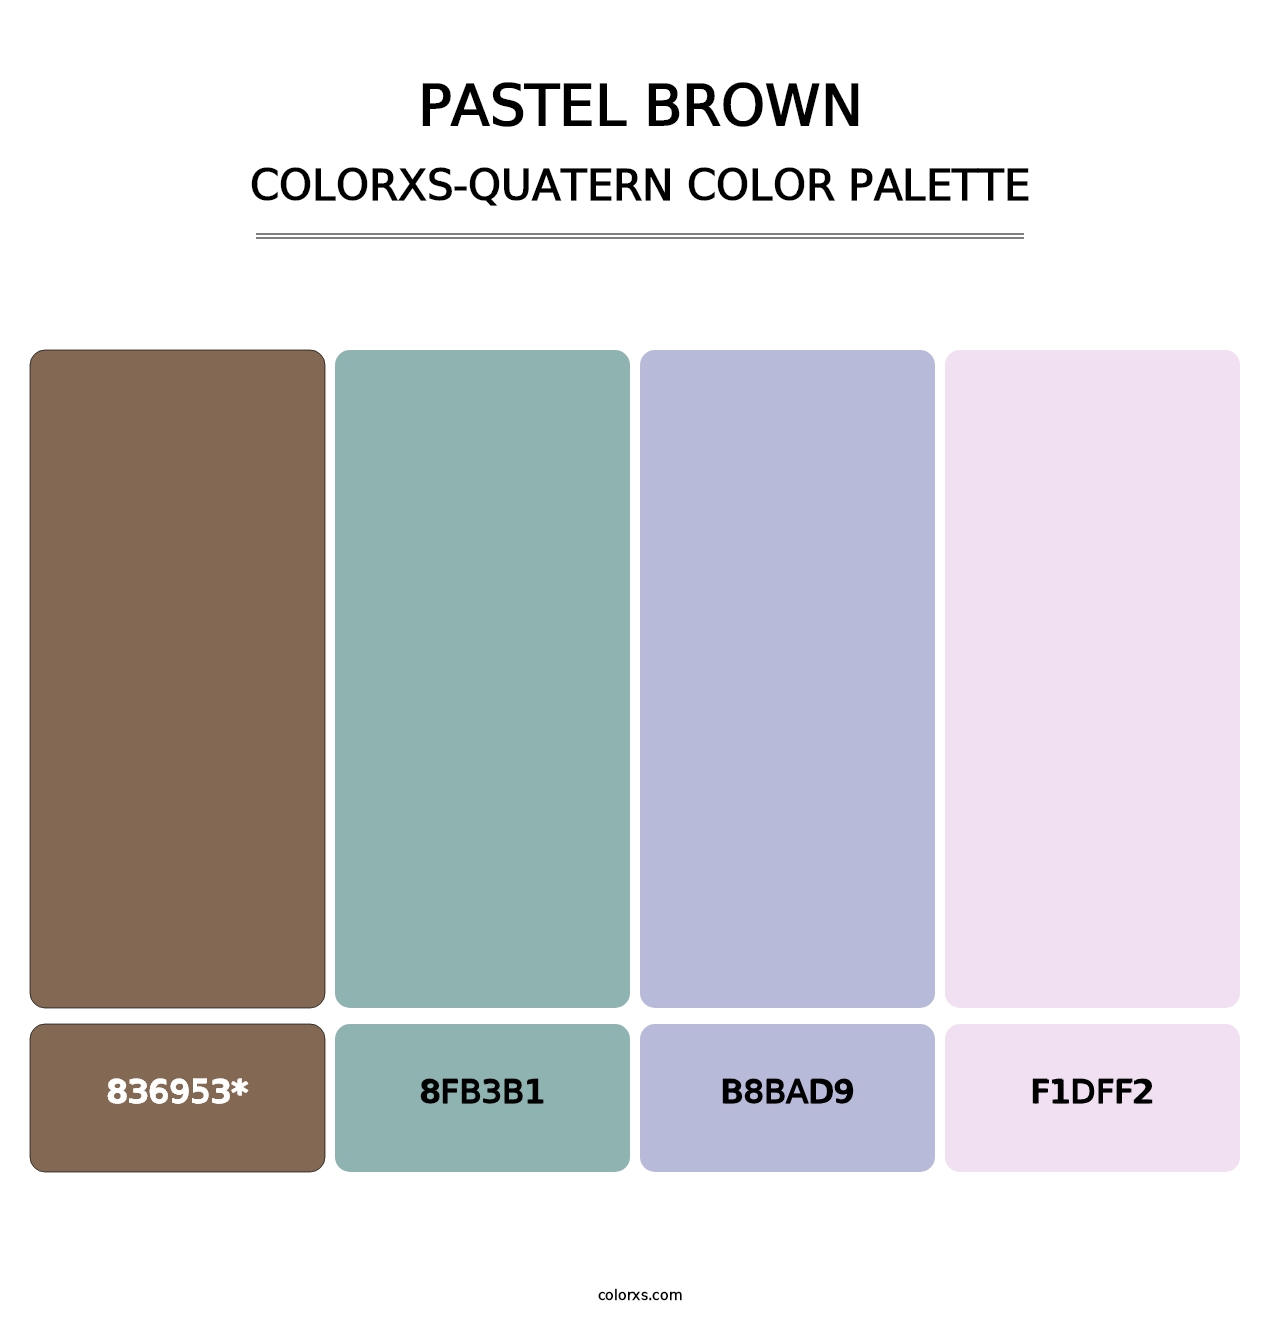 Pastel Brown - Colorxs Quatern Palette